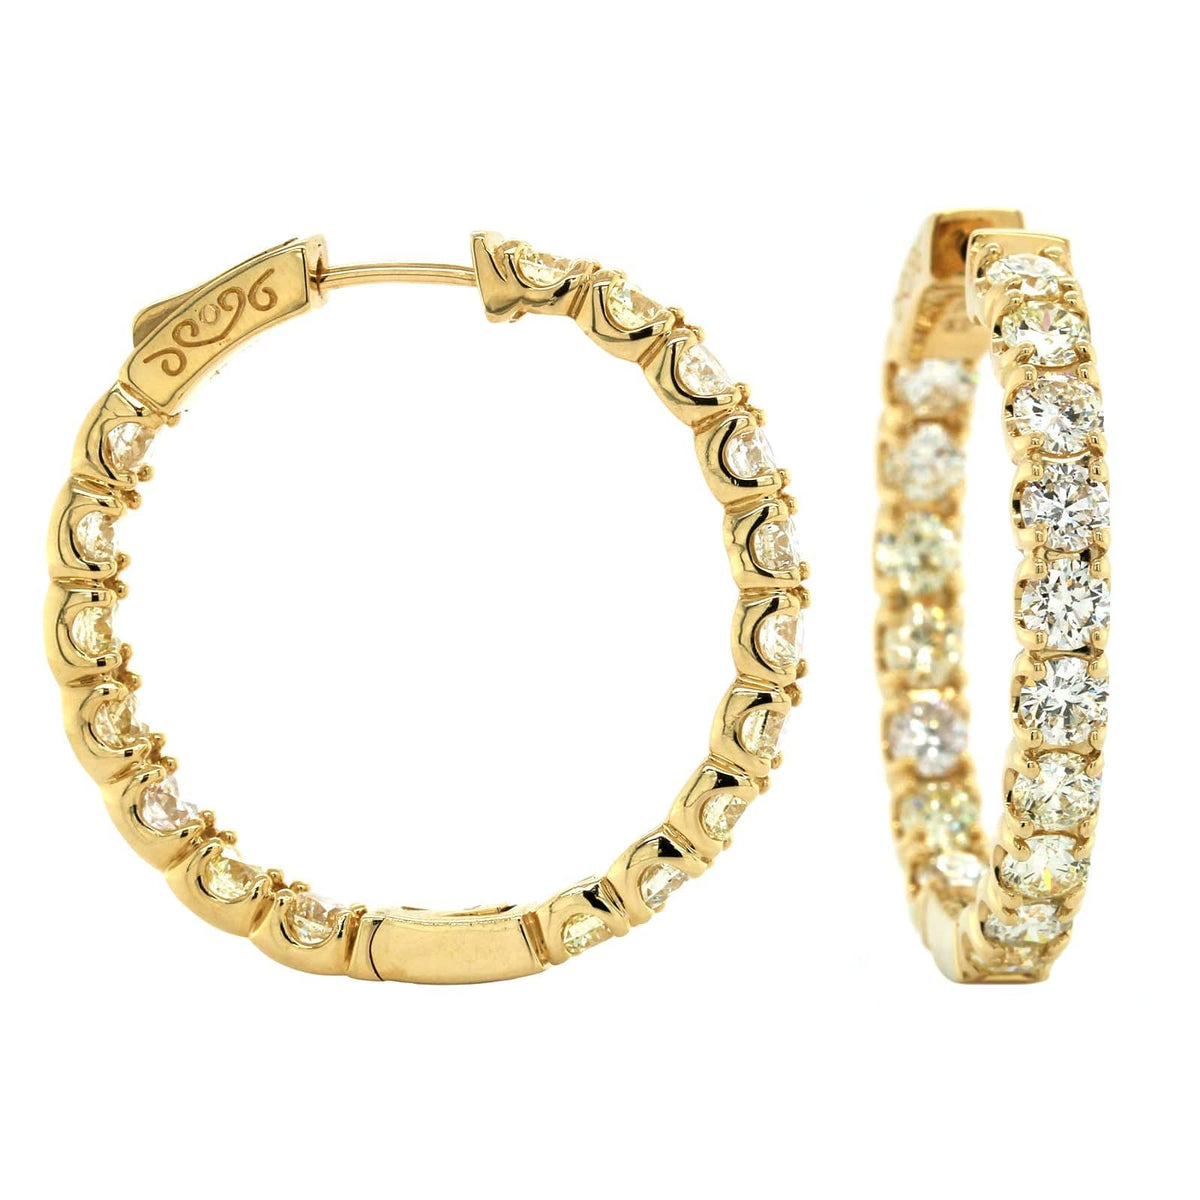 14K Yellow Gold Inside Outside Diamond Hoop Earrings, 14k yellow gold, Long's Jewelers